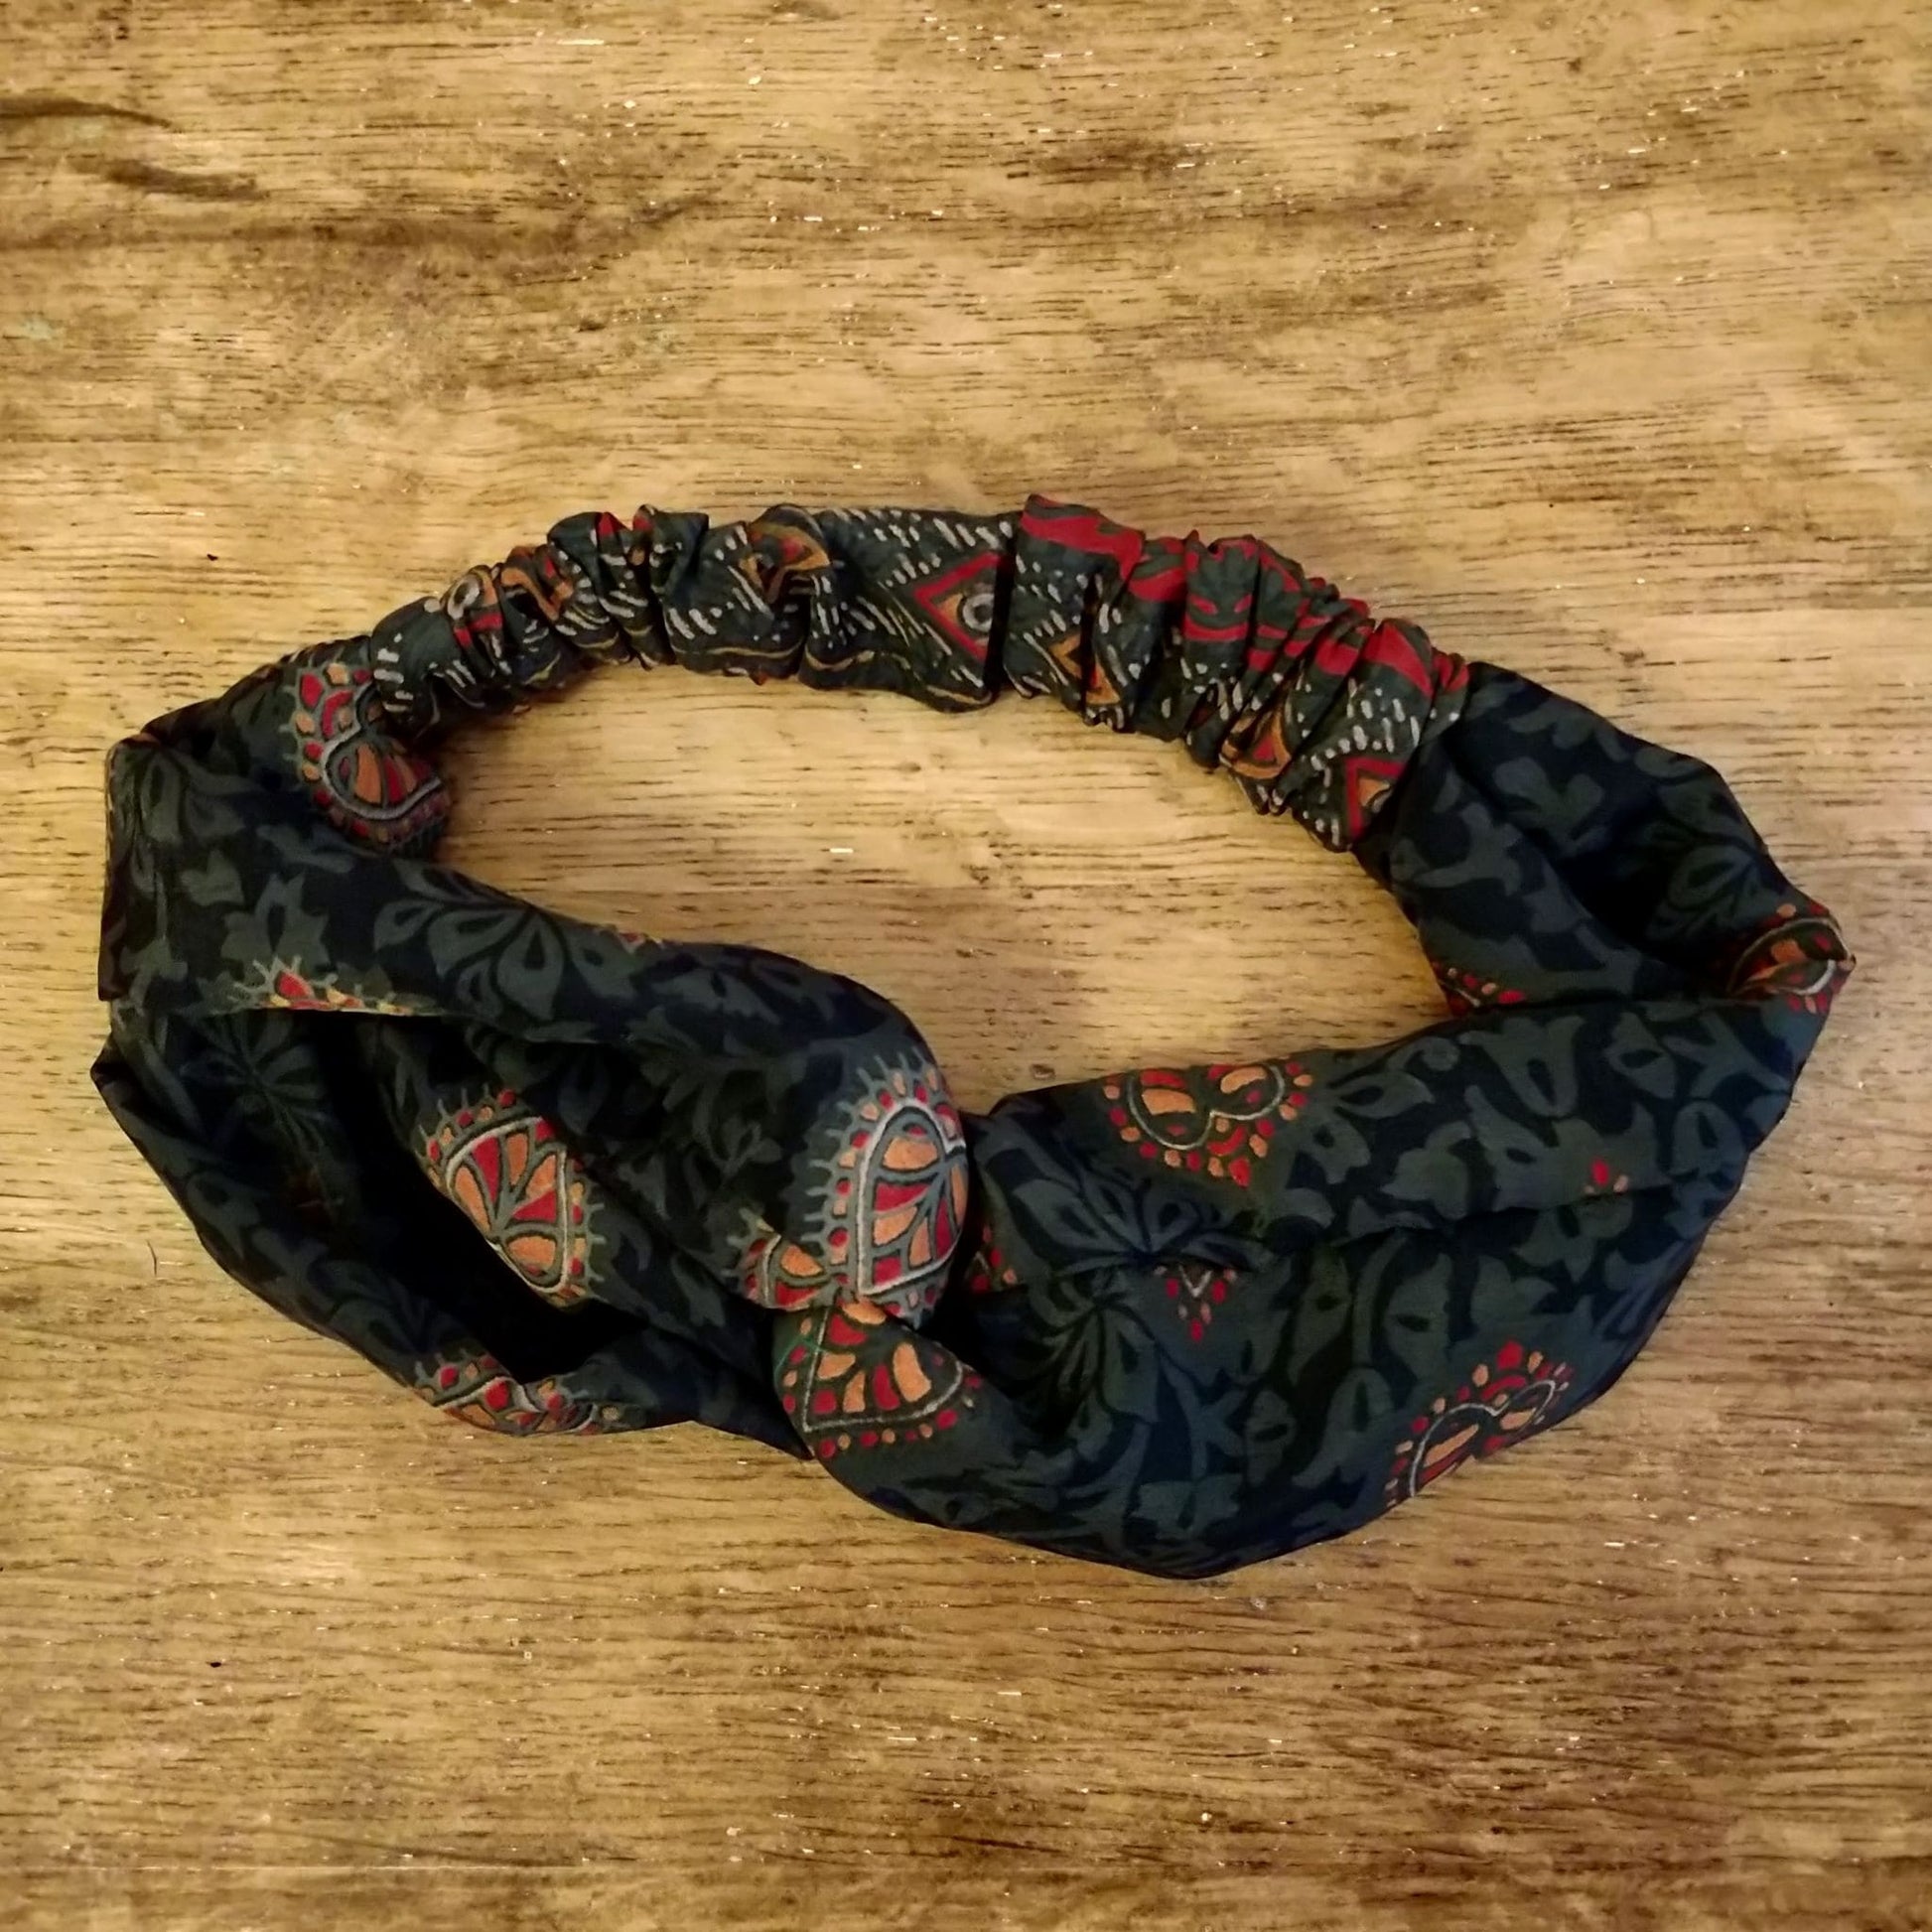 Turban Headband made from Upcycled Saris - midnight